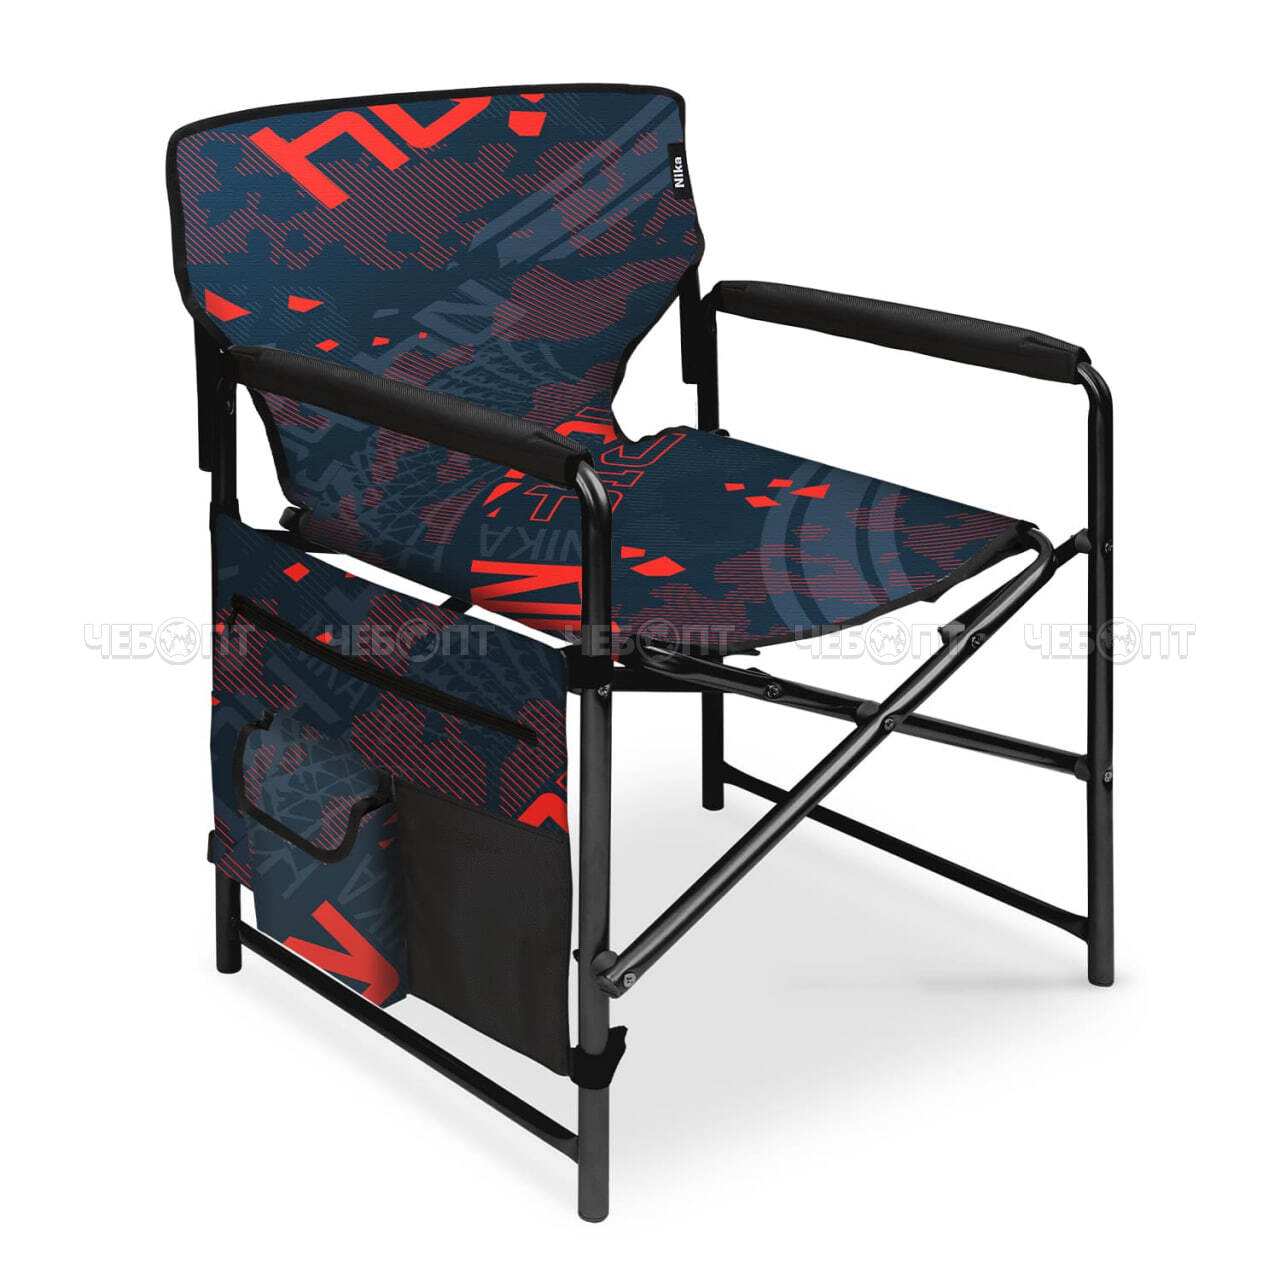 Кресло - складное туристическое 490*550*820 мм,  нагрузка 120 кг, с навесным карманом, ткань-водоотталкивающая  пропитка арт. КС2 NIKA [2]. ЧЕБОПТ.